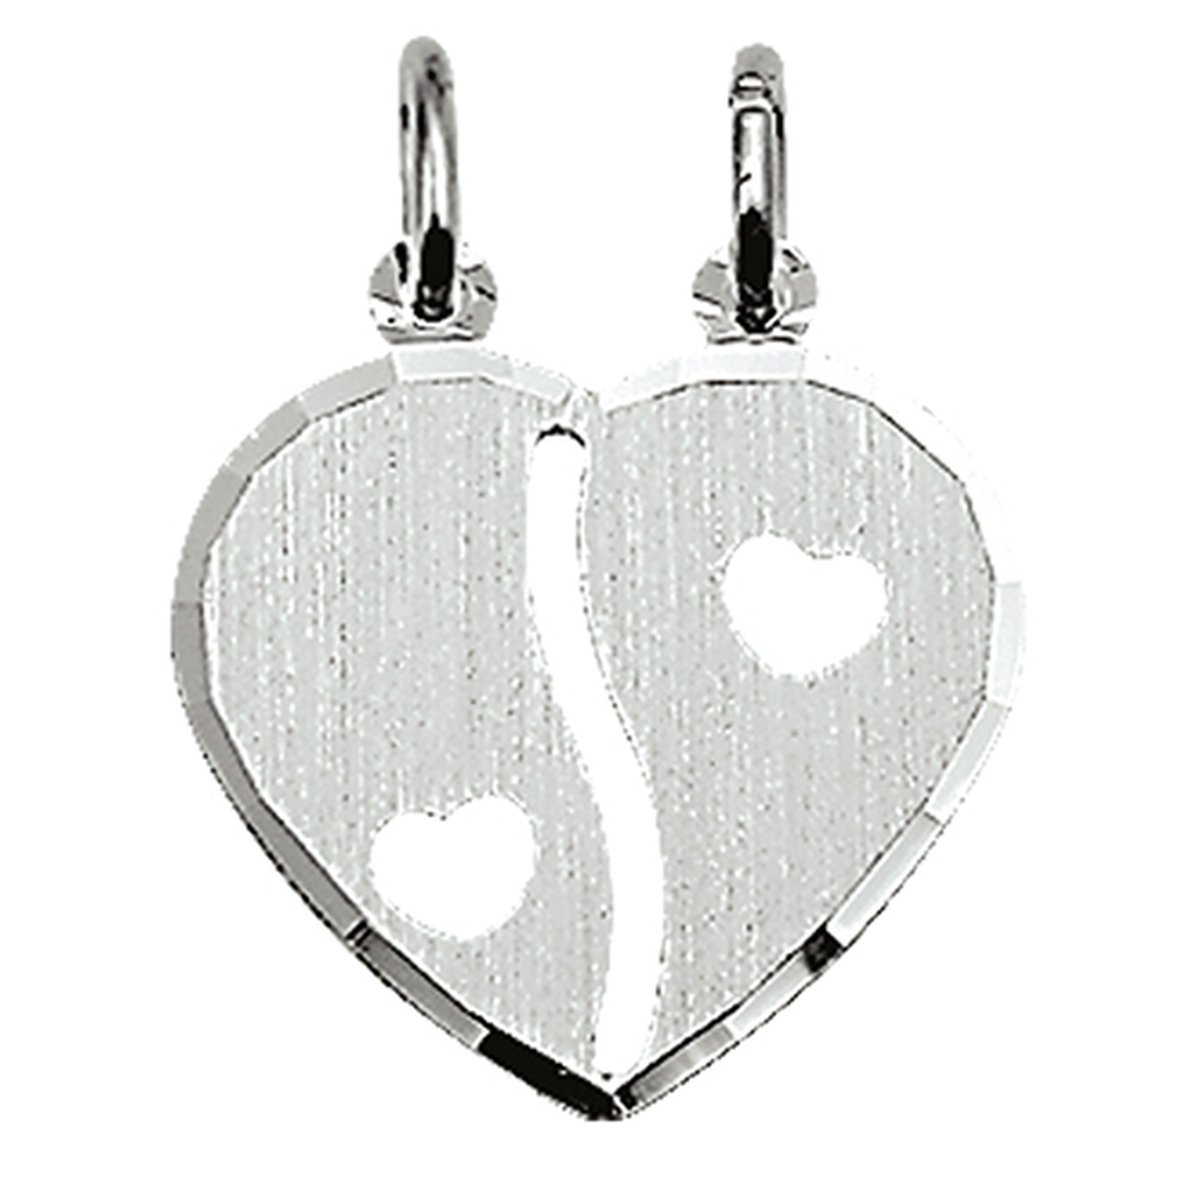 Vriendschapshartje® Breekhartje met hartjes mat gediamanteerd zilver - hart hanger - gepersonaliseerd breekhart - inclusief graveren